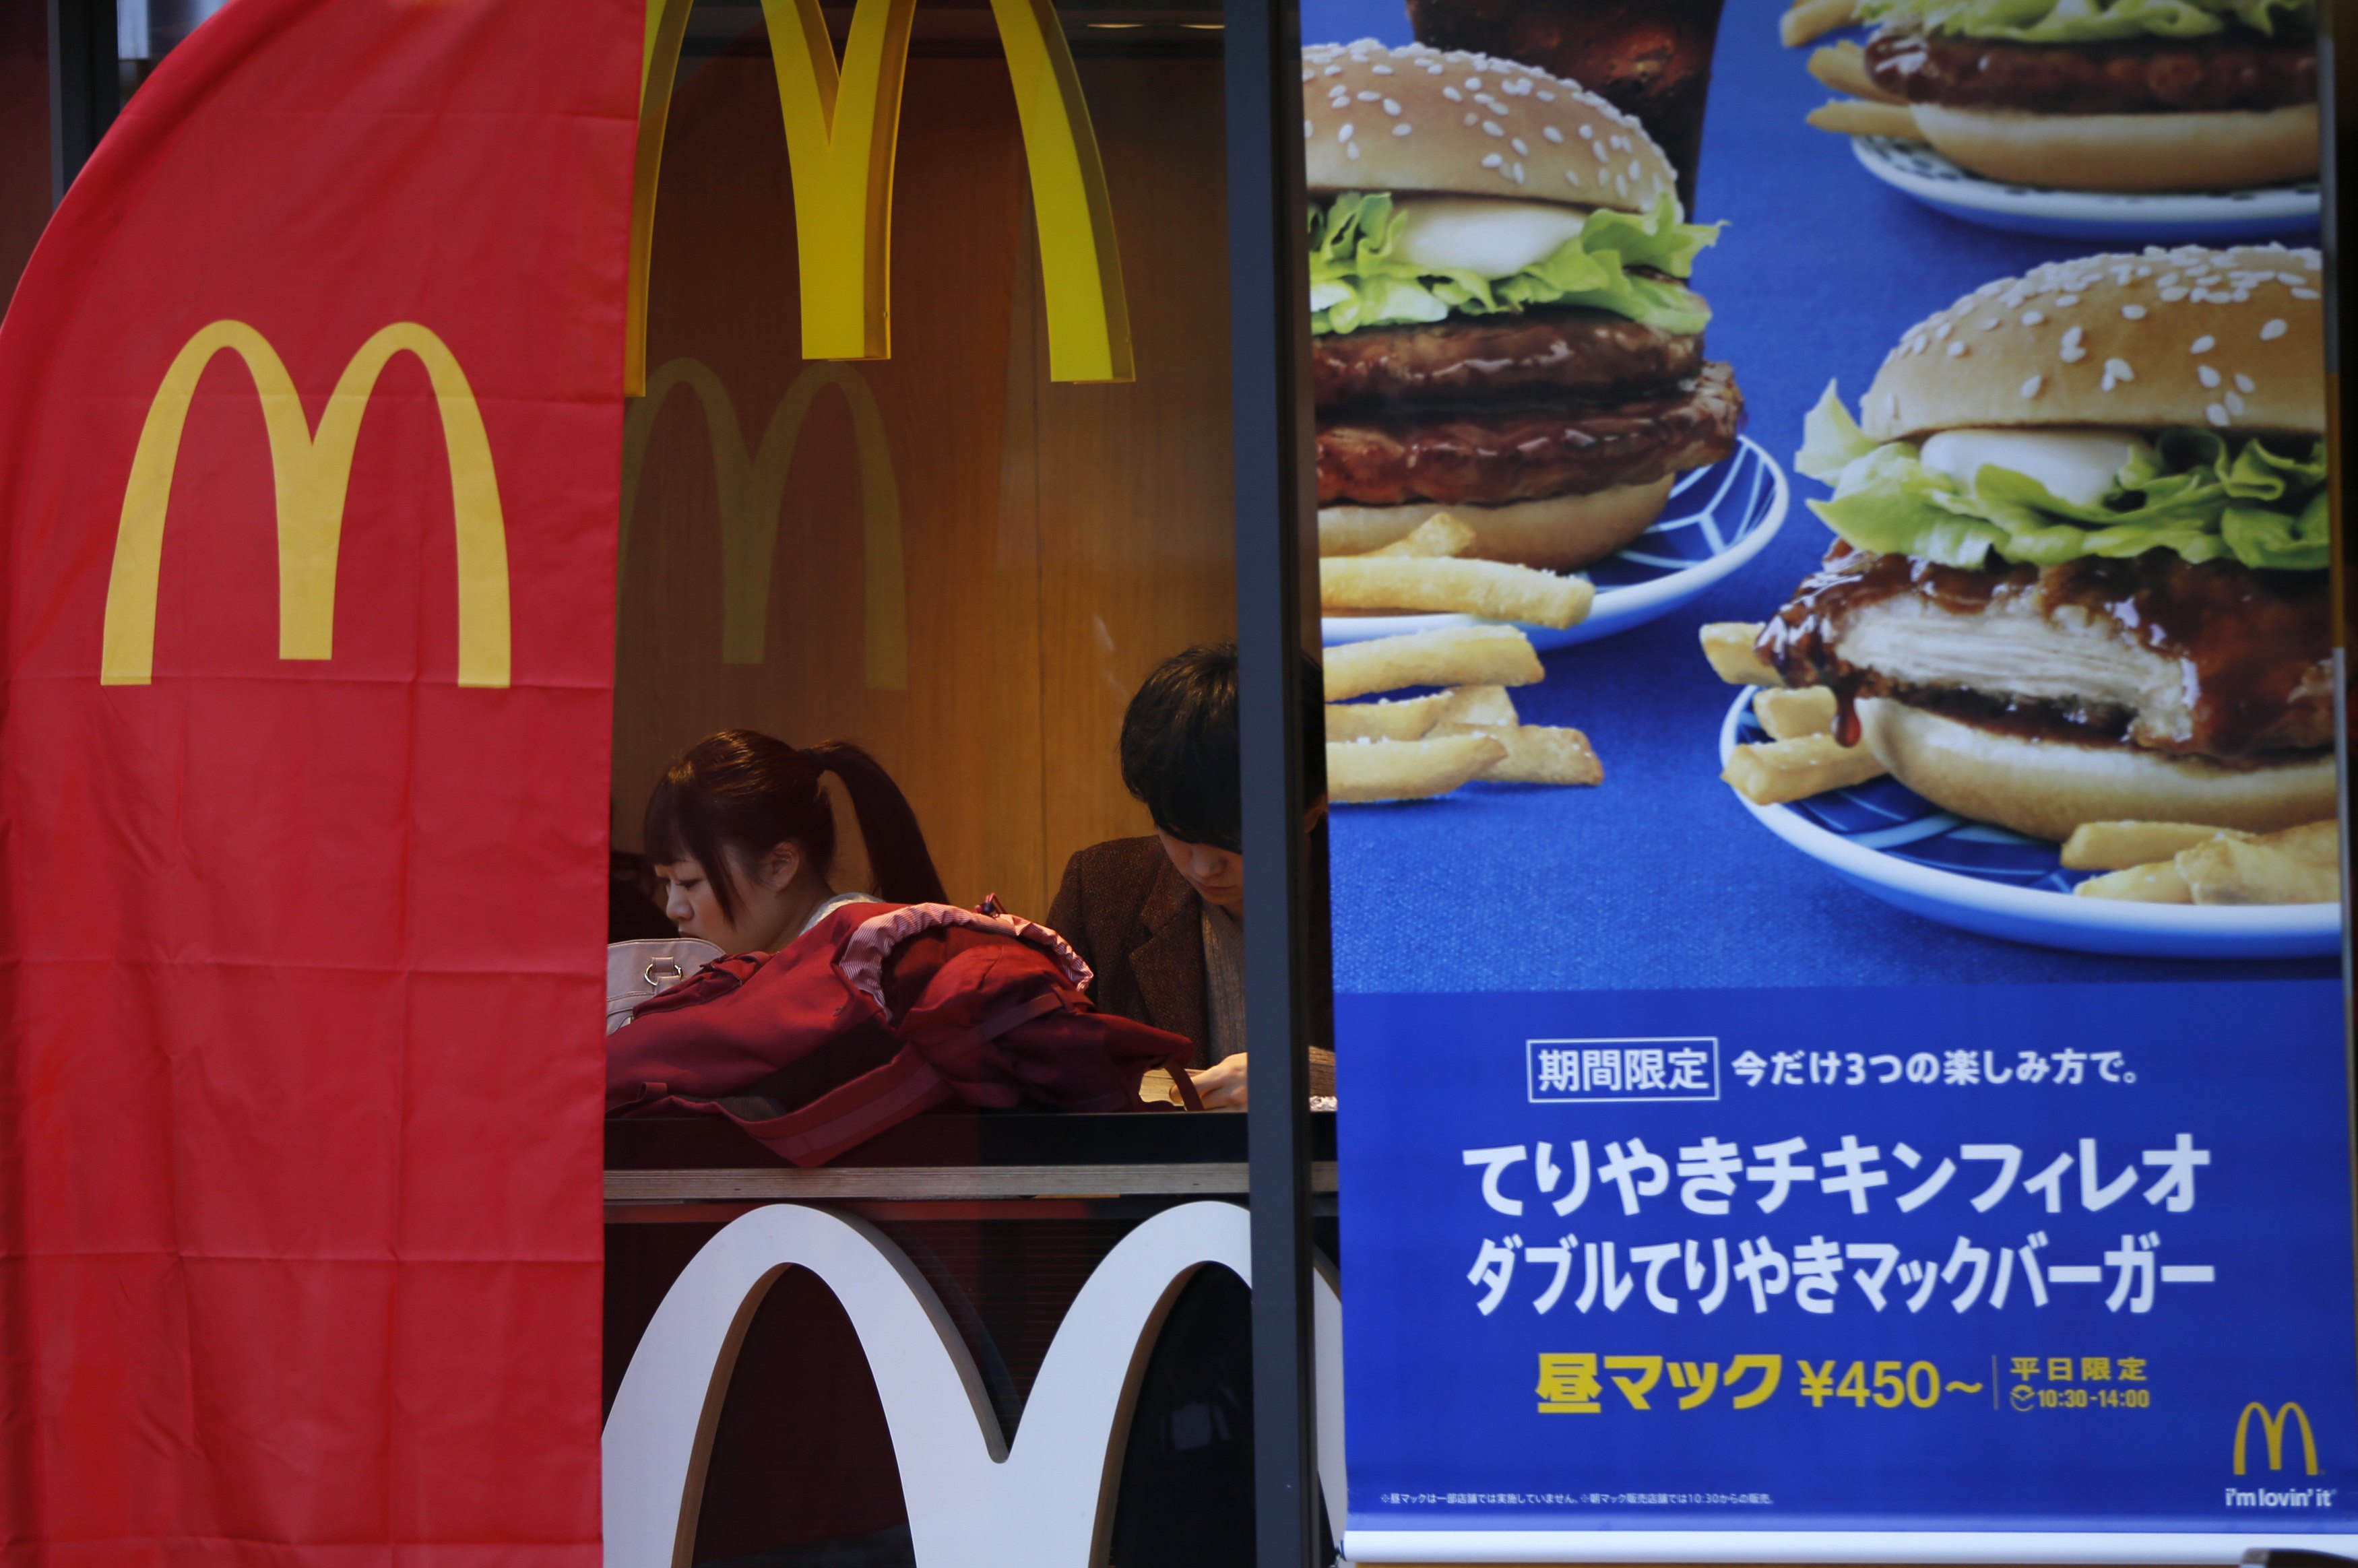 Más trozos de “materia dental” en una hamburguesa McDonald’s en Japón